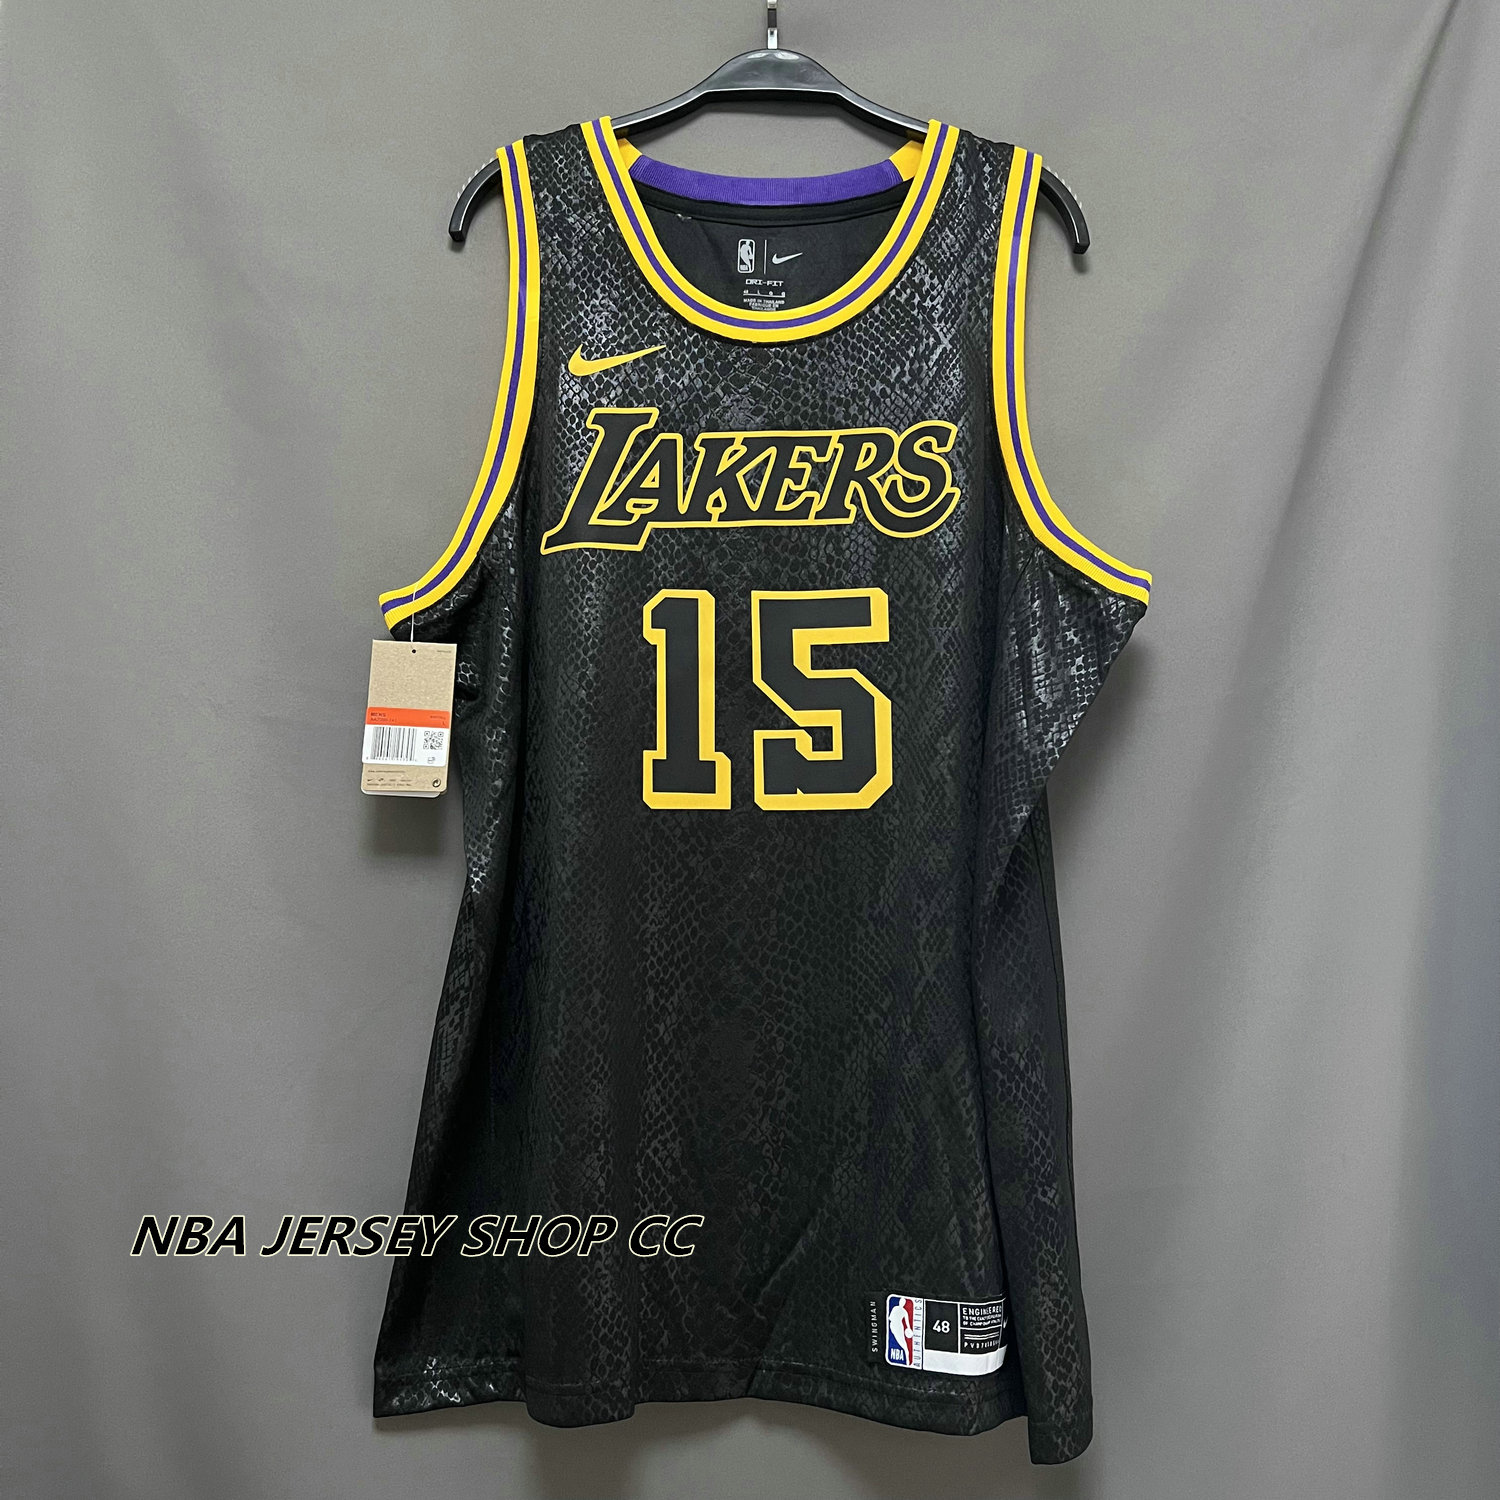 Nike NBA Lakers No. 8 Kobe Fan Edition SW Away Jersey Purple (Men's/Lakers/Bryant/Los Angeles/Fans Edition) AV3701-504